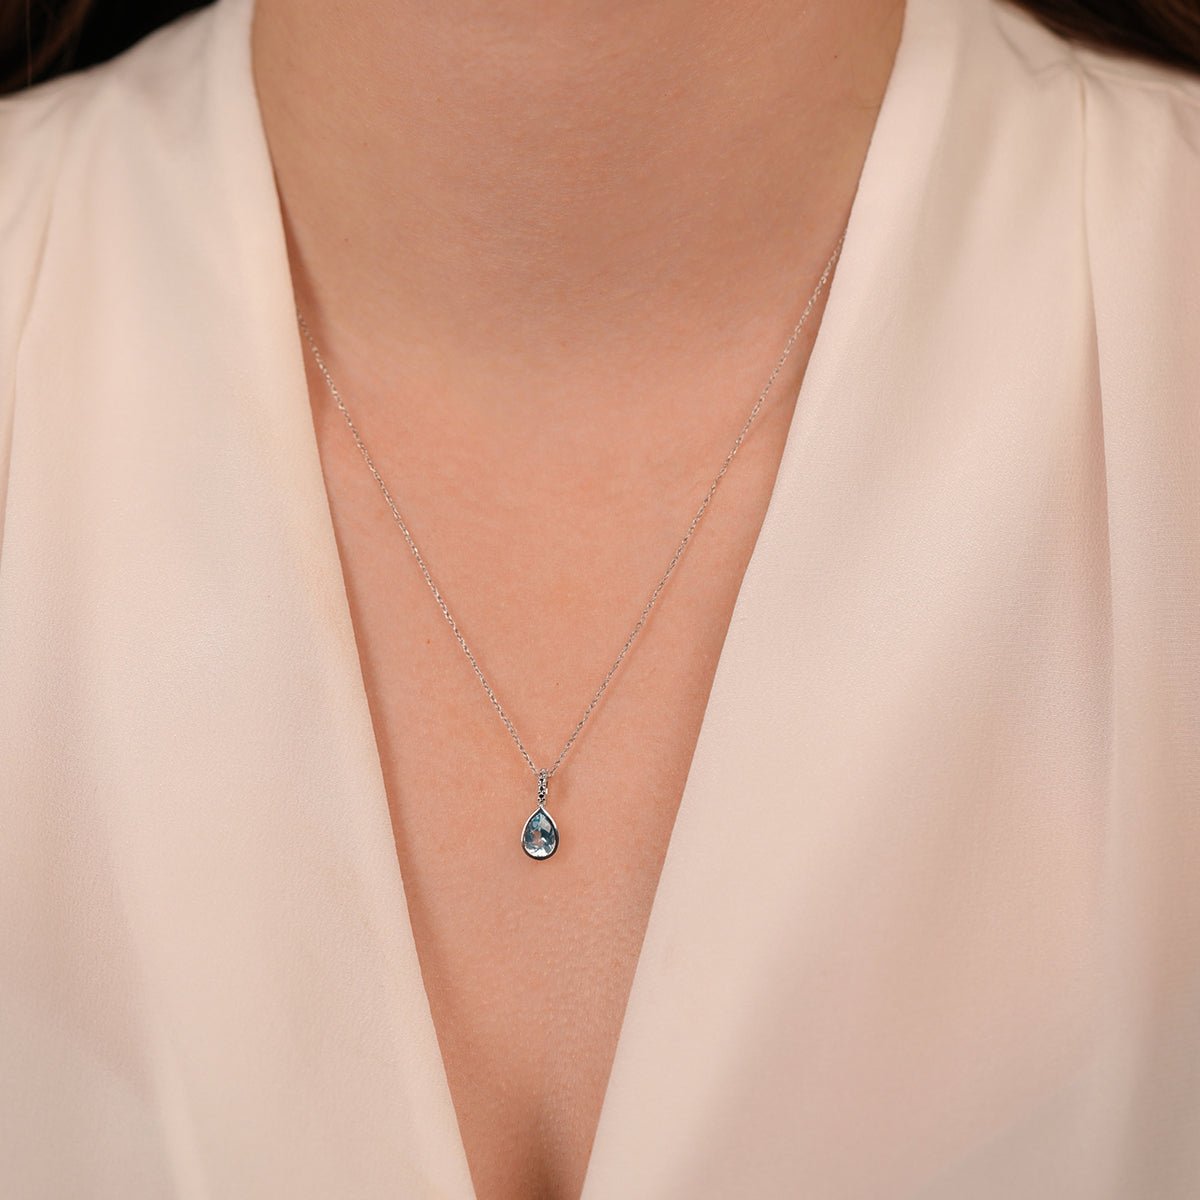 Blue Topaz Teardrop Pendant Necklace Necklaces Estella Collection #product_description# 14k Birthstone Blue Gemstone #tag4# #tag5# #tag6# #tag7# #tag8# #tag9# #tag10#